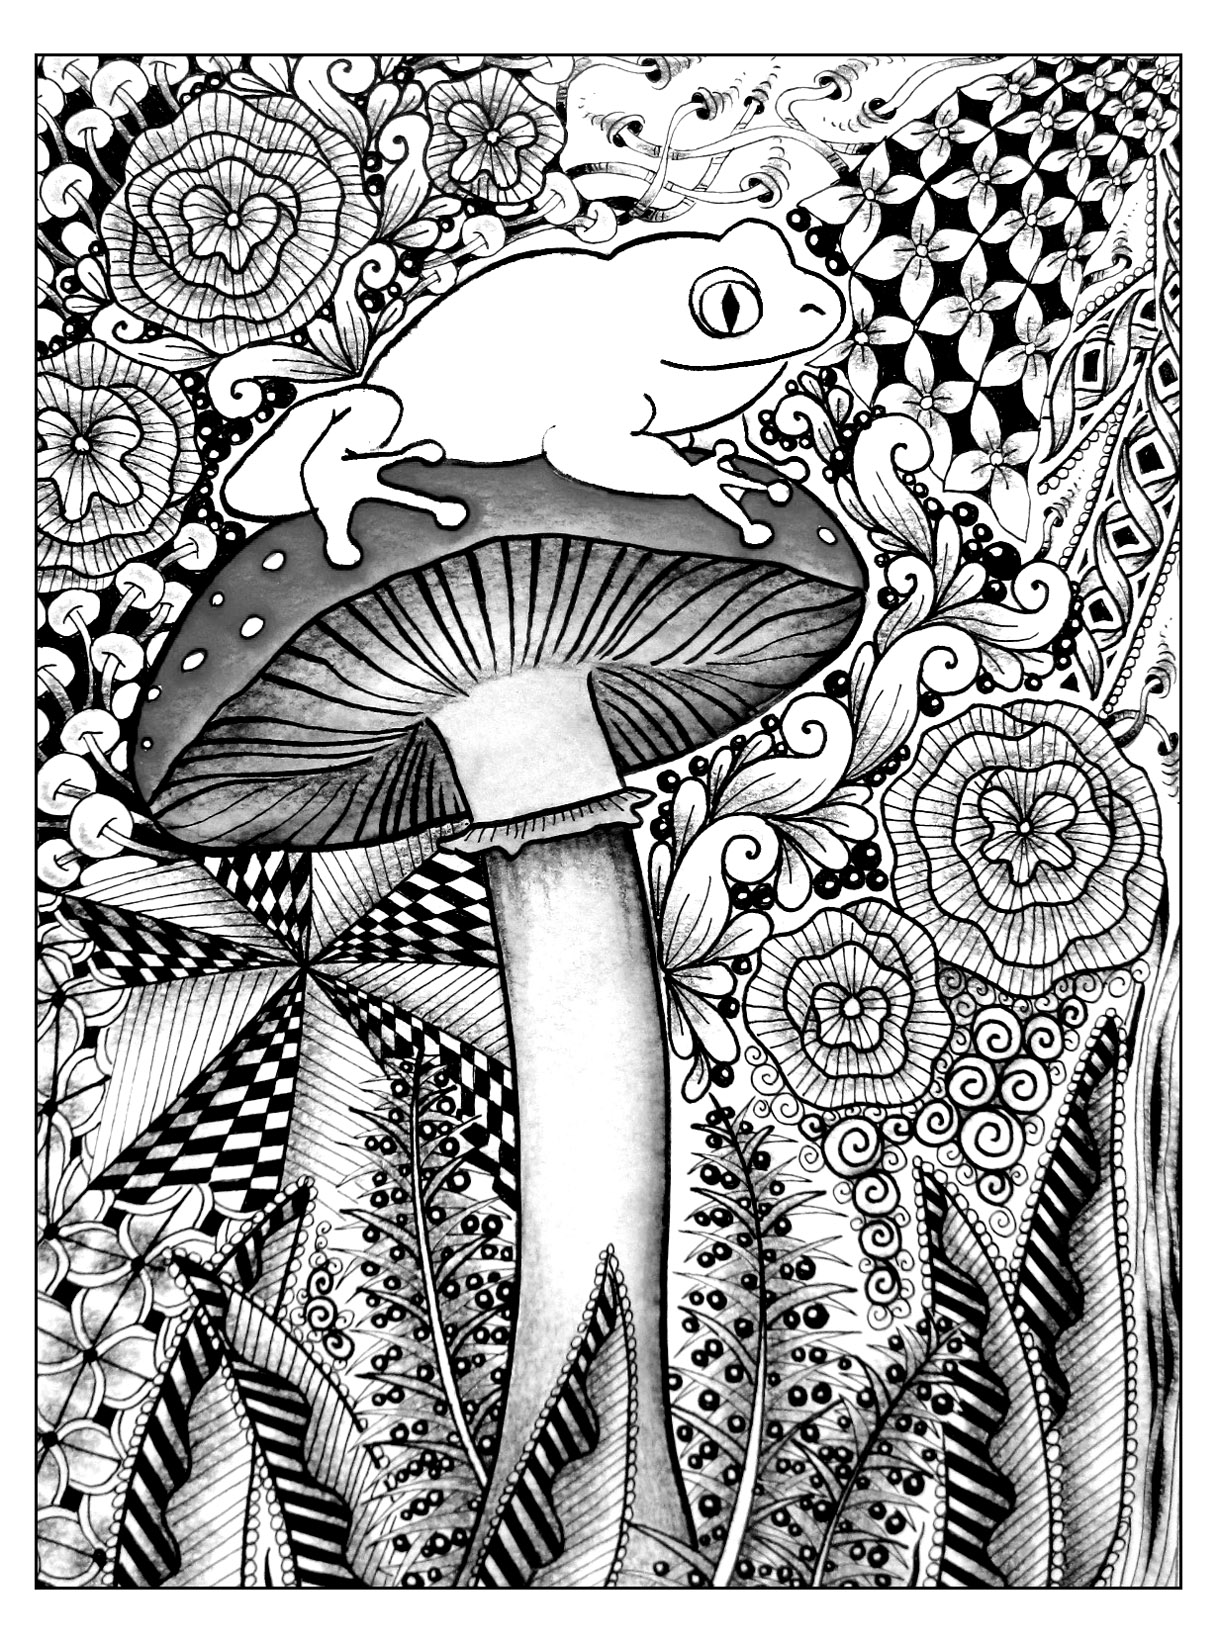 Una bella rana appollaiata su un fungo. Una vera sfida! In questo disegno, una graziosa rana è appollaiata su un fungo. Sono circondate da una vegetazione ipnotica... Ci sono molti dettagli da tenere in considerazione per realizzare questa colorazione.